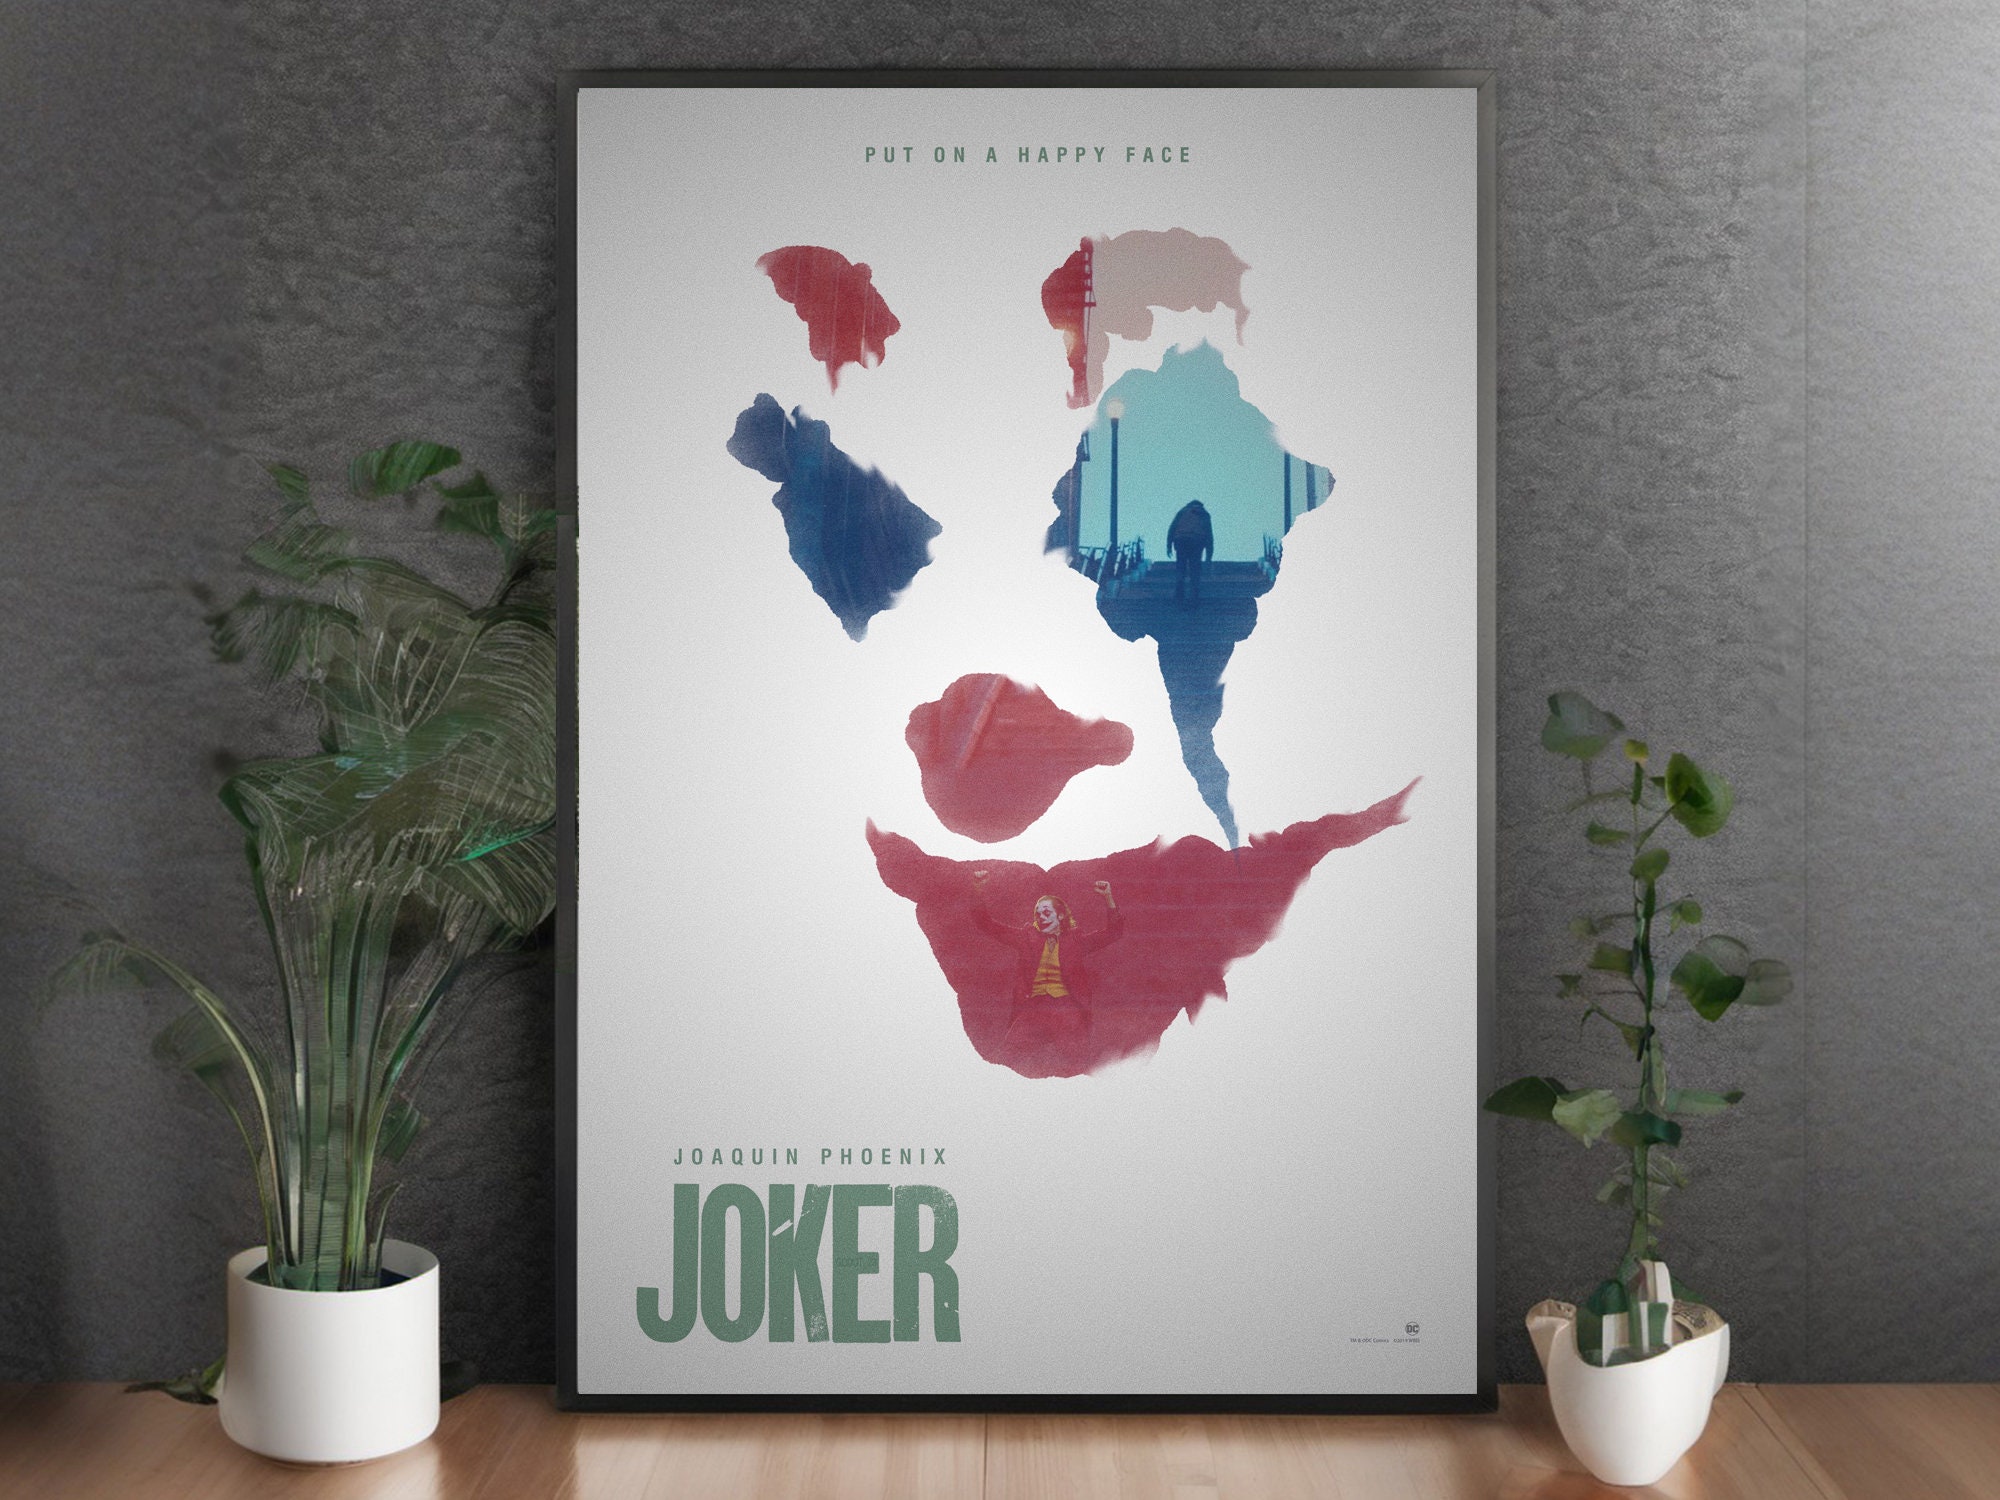 Joker Movie posters